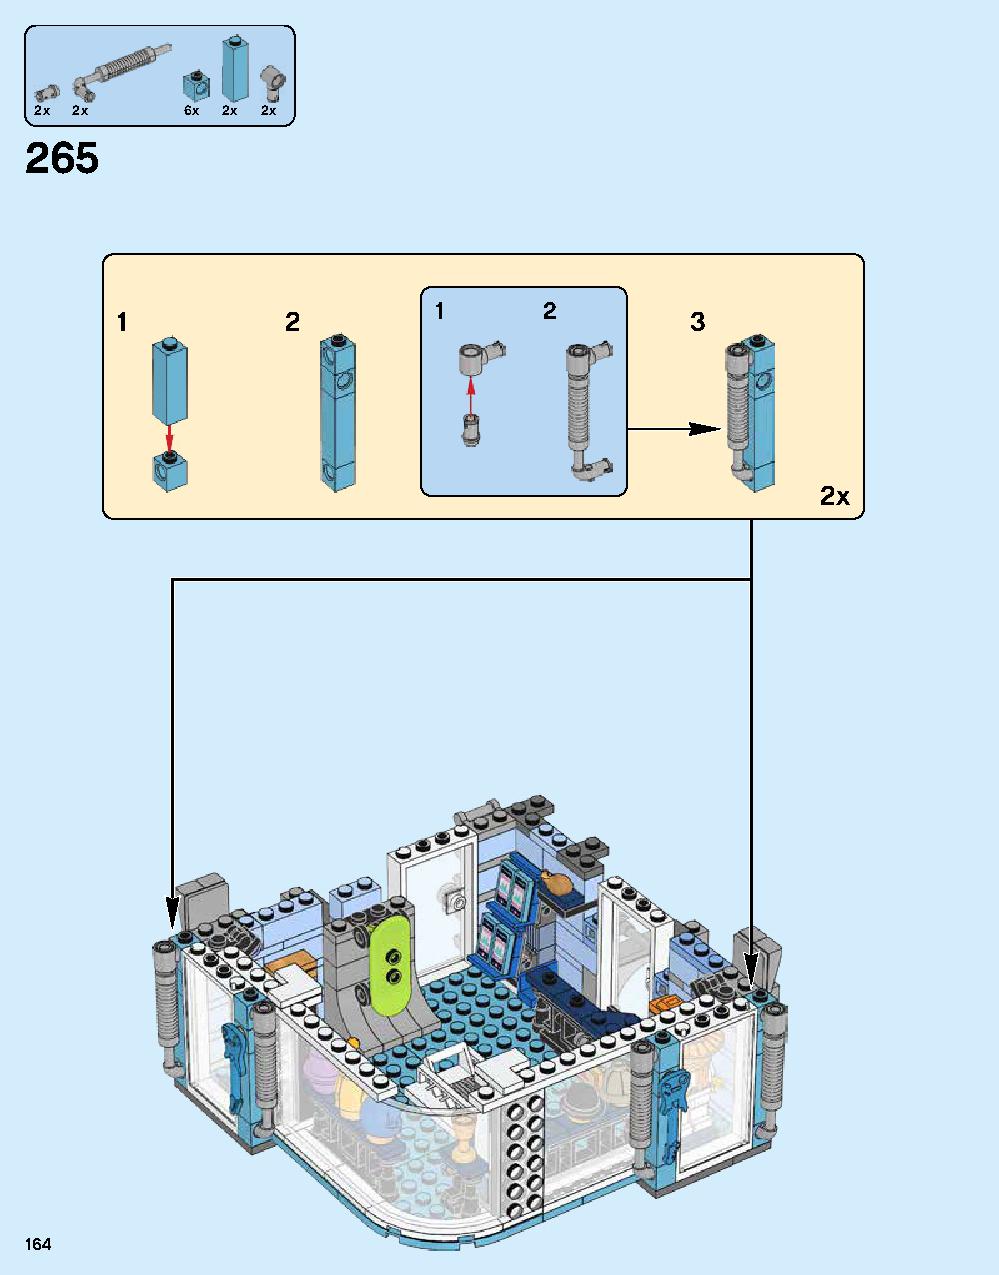 ニンジャゴー シティ 70620 レゴの商品情報 レゴの説明書・組立方法 164 page